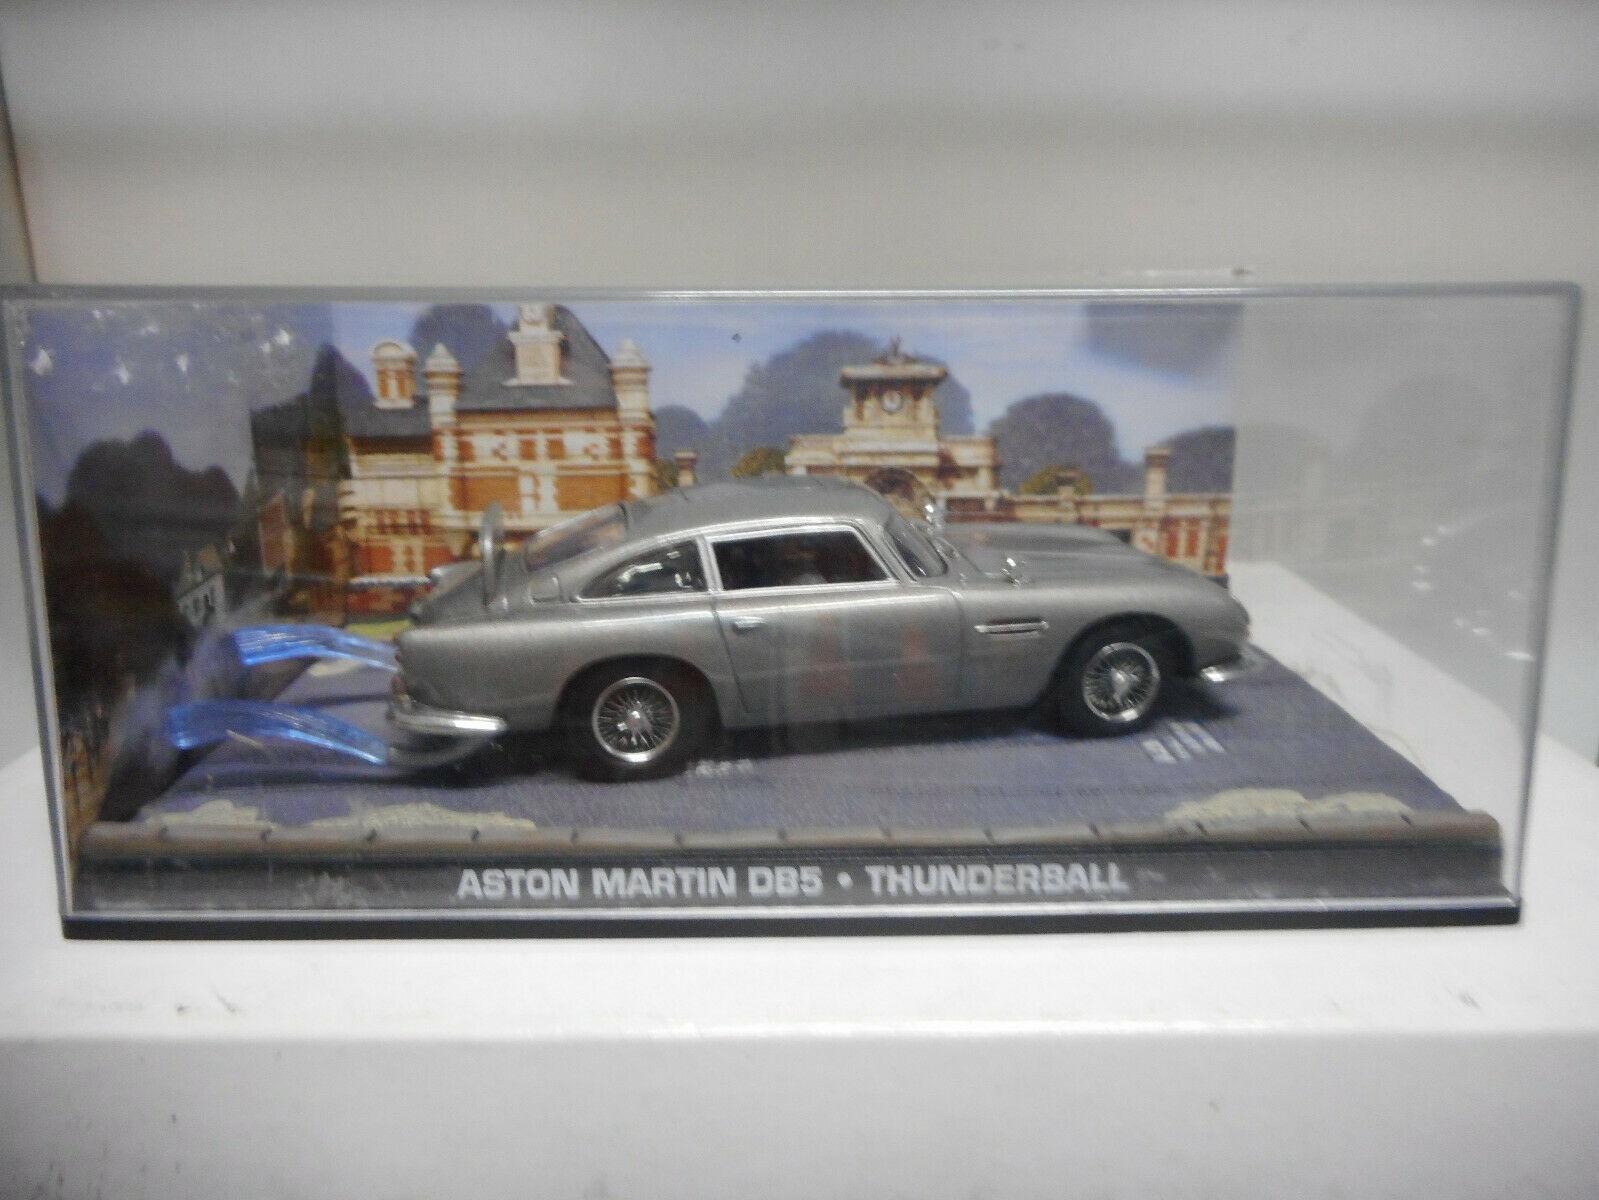 Aston Martin DB5 miniature from Skyfall — ajb007